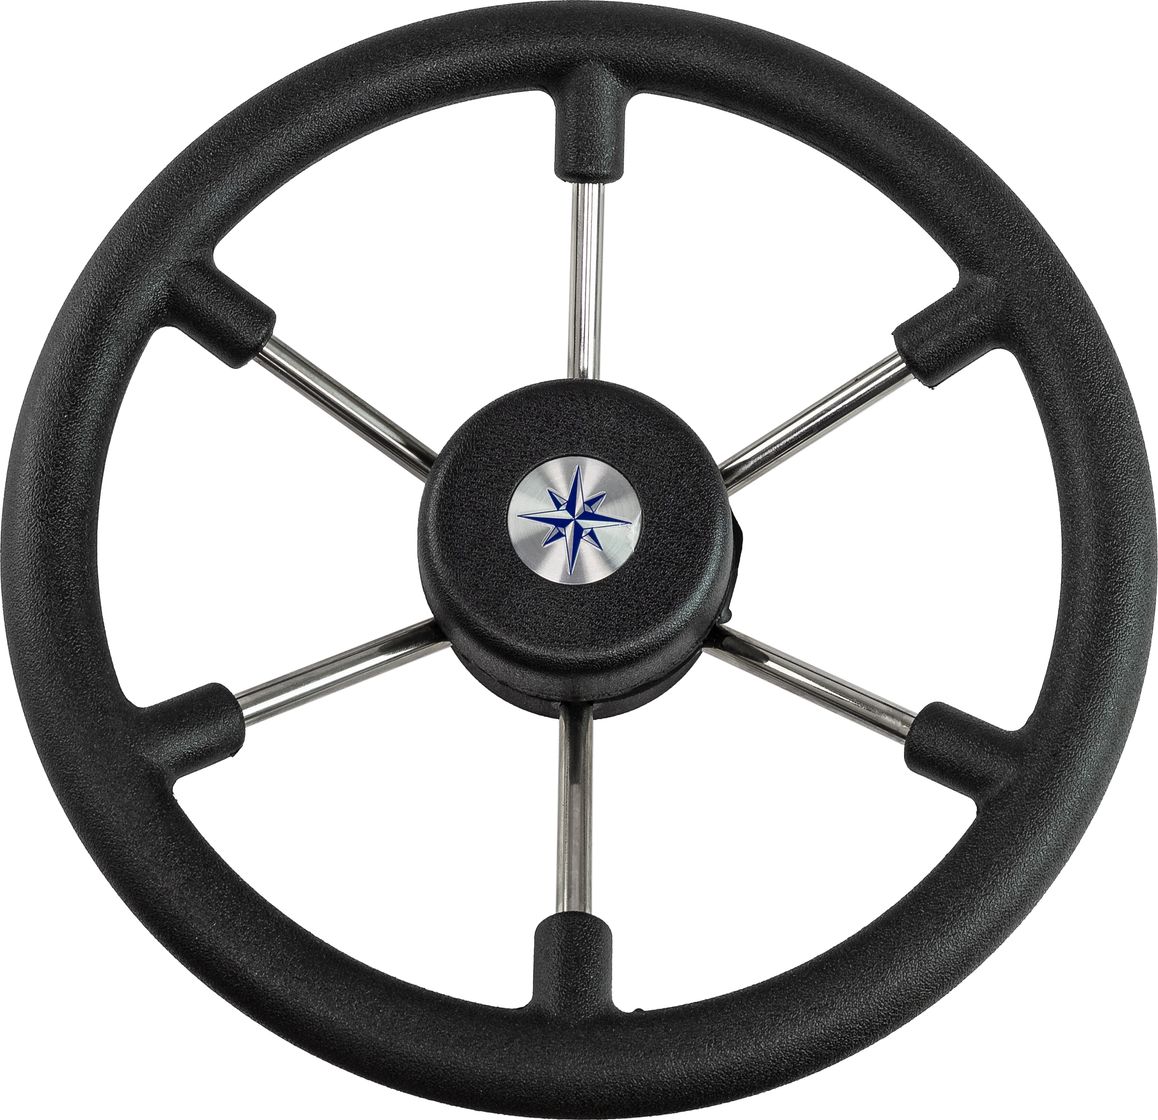 Рулевое колесо LEADER TANEGUM черный обод серебряные спицы д. 330 мм VN7330-01 рулевое колесо leader tanegum белый обод серебряные спицы д 330 мм vn7330 08